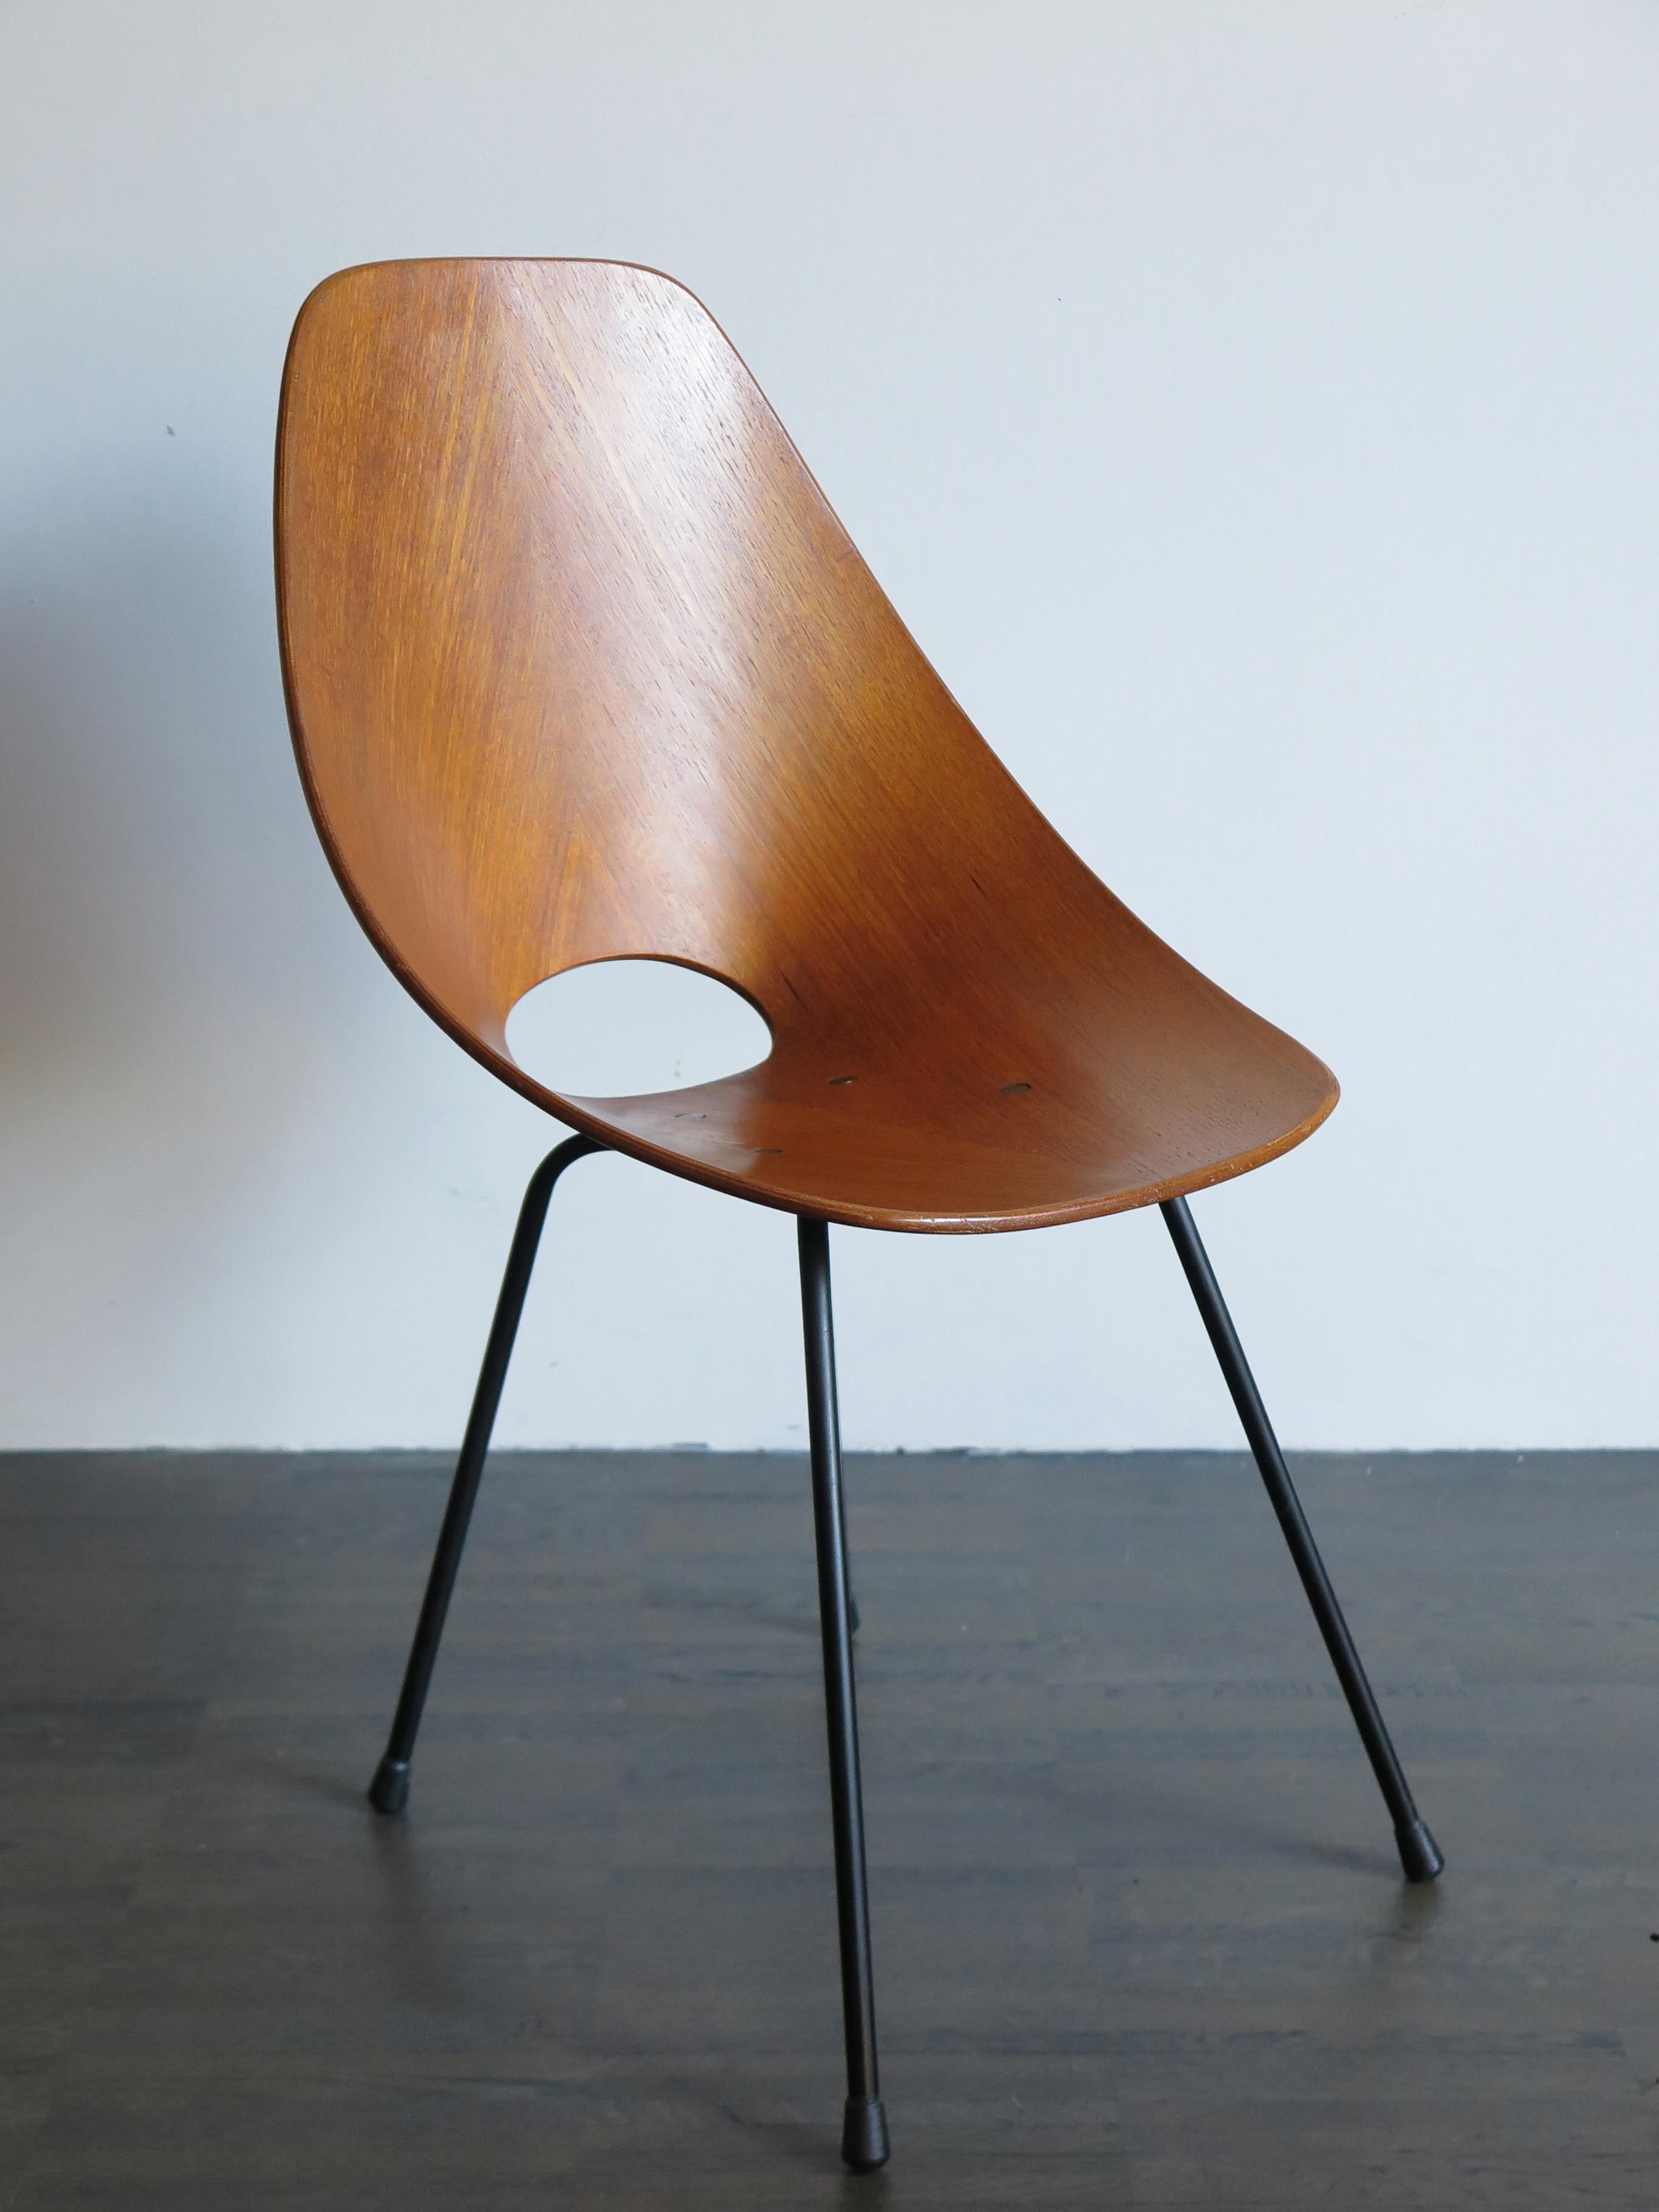 Vittorio Nobili Italian Wood Medea Chairs for Fratelli Tagliabue, 1950s For Sale 2